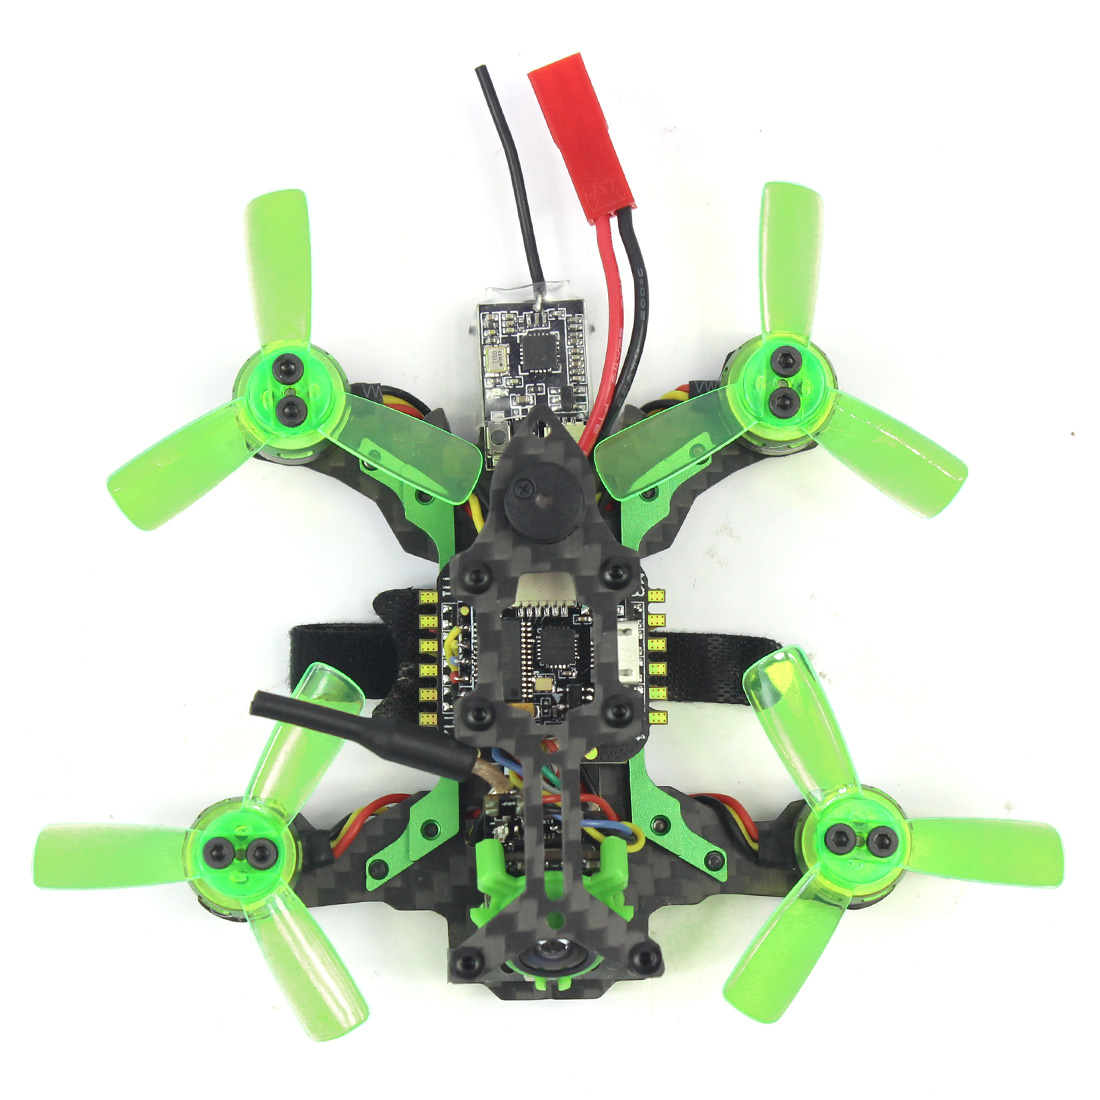 US$ 123.25 - Mantis85 85mm 6CH 2.4G RC FPV Micro Racing Drone